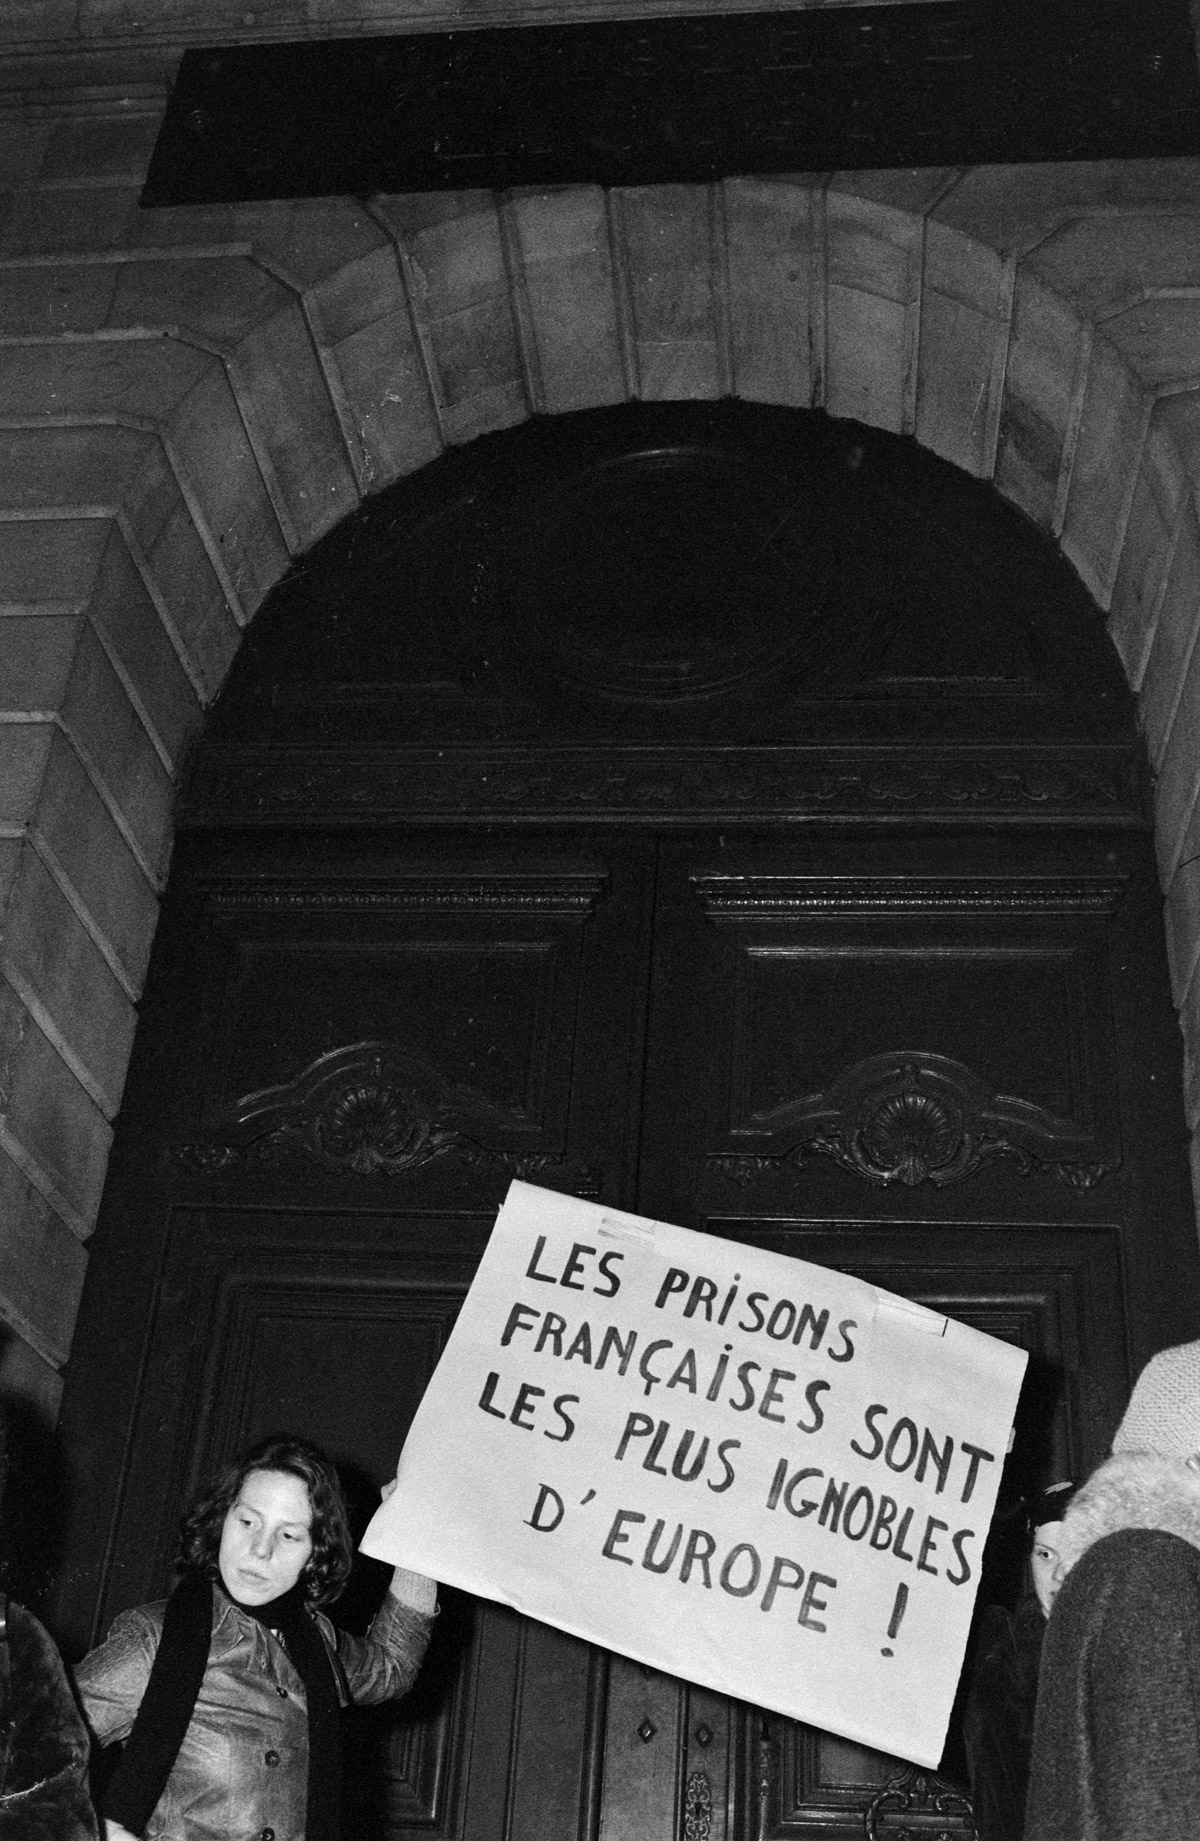 Les prisons françaises sont les plus ignobles d'Europe, photographie, s.d.